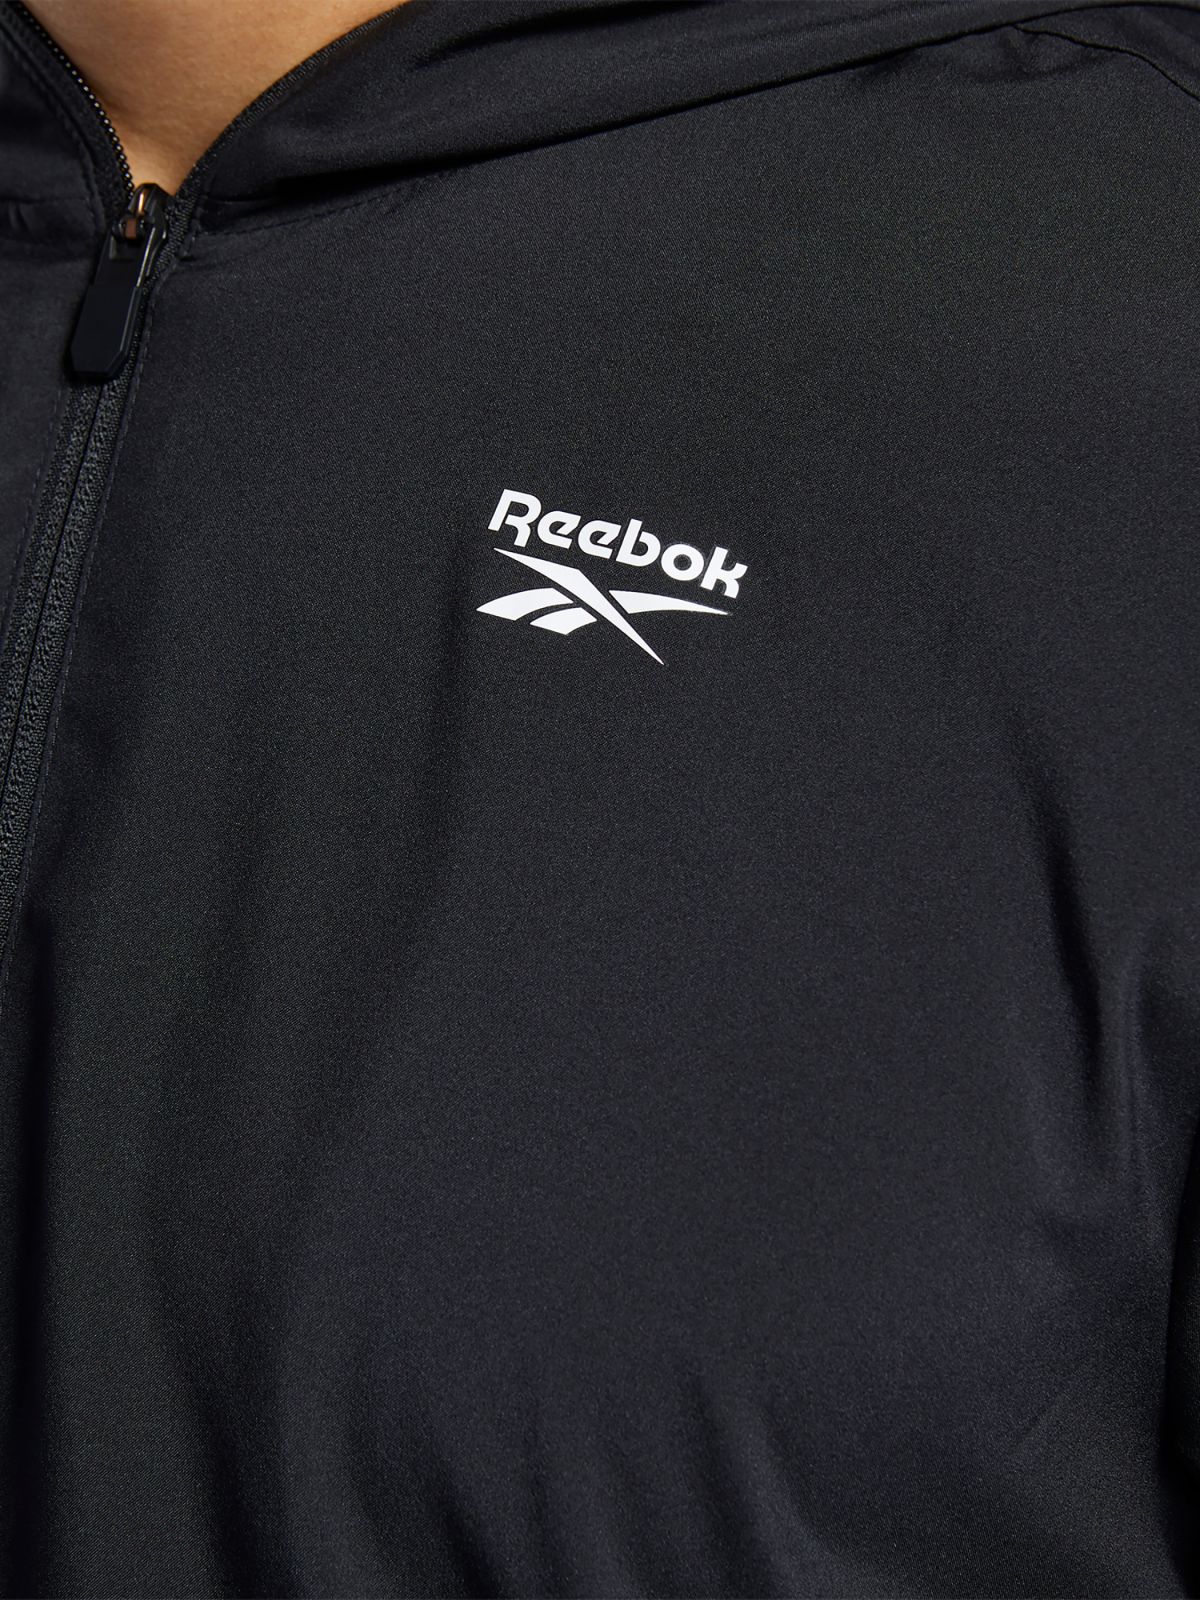  ג'קט עם הדפס לוגו של REEBOK